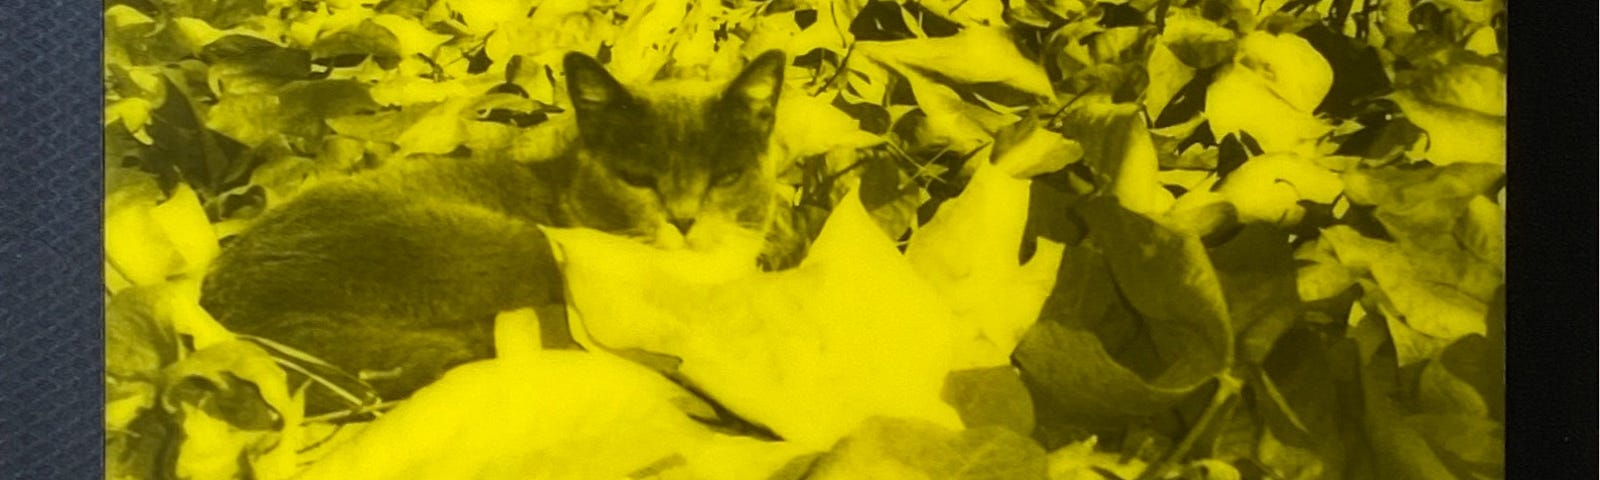 Cat in a leaf pile